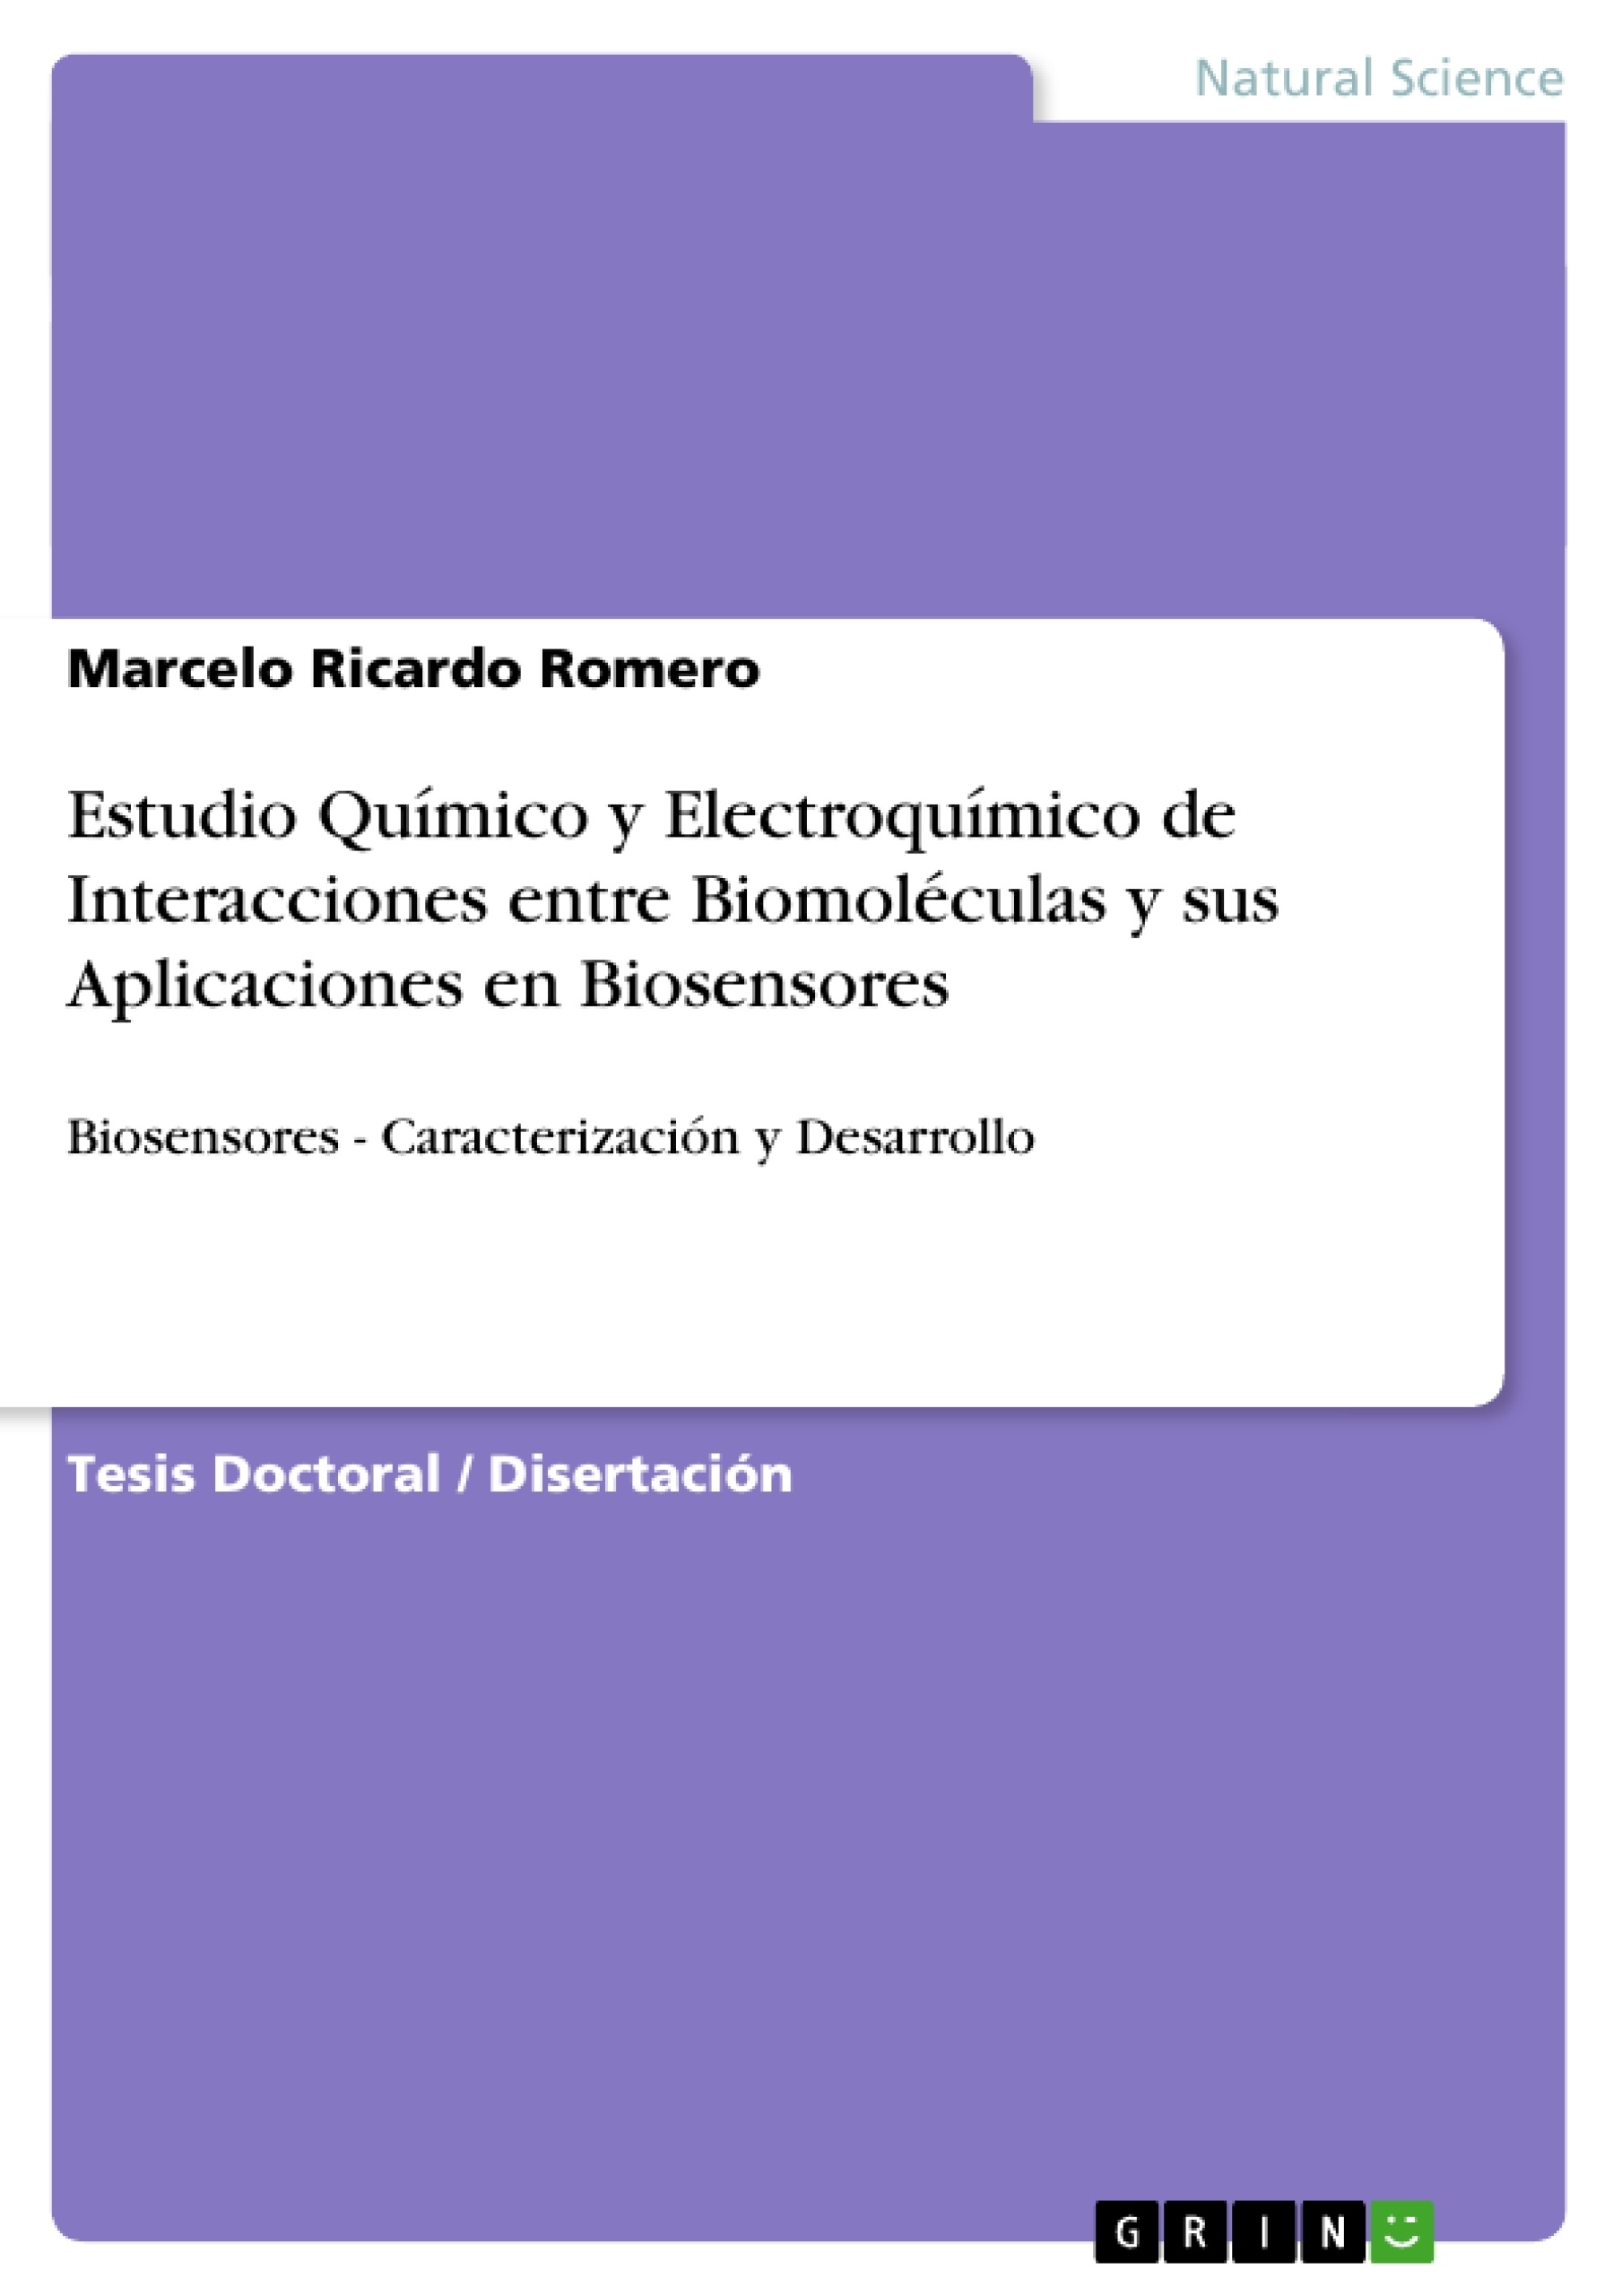 Título: Estudio Químico y Electroquímico de Interacciones entre Biomoléculas y sus Aplicaciones en Biosensores